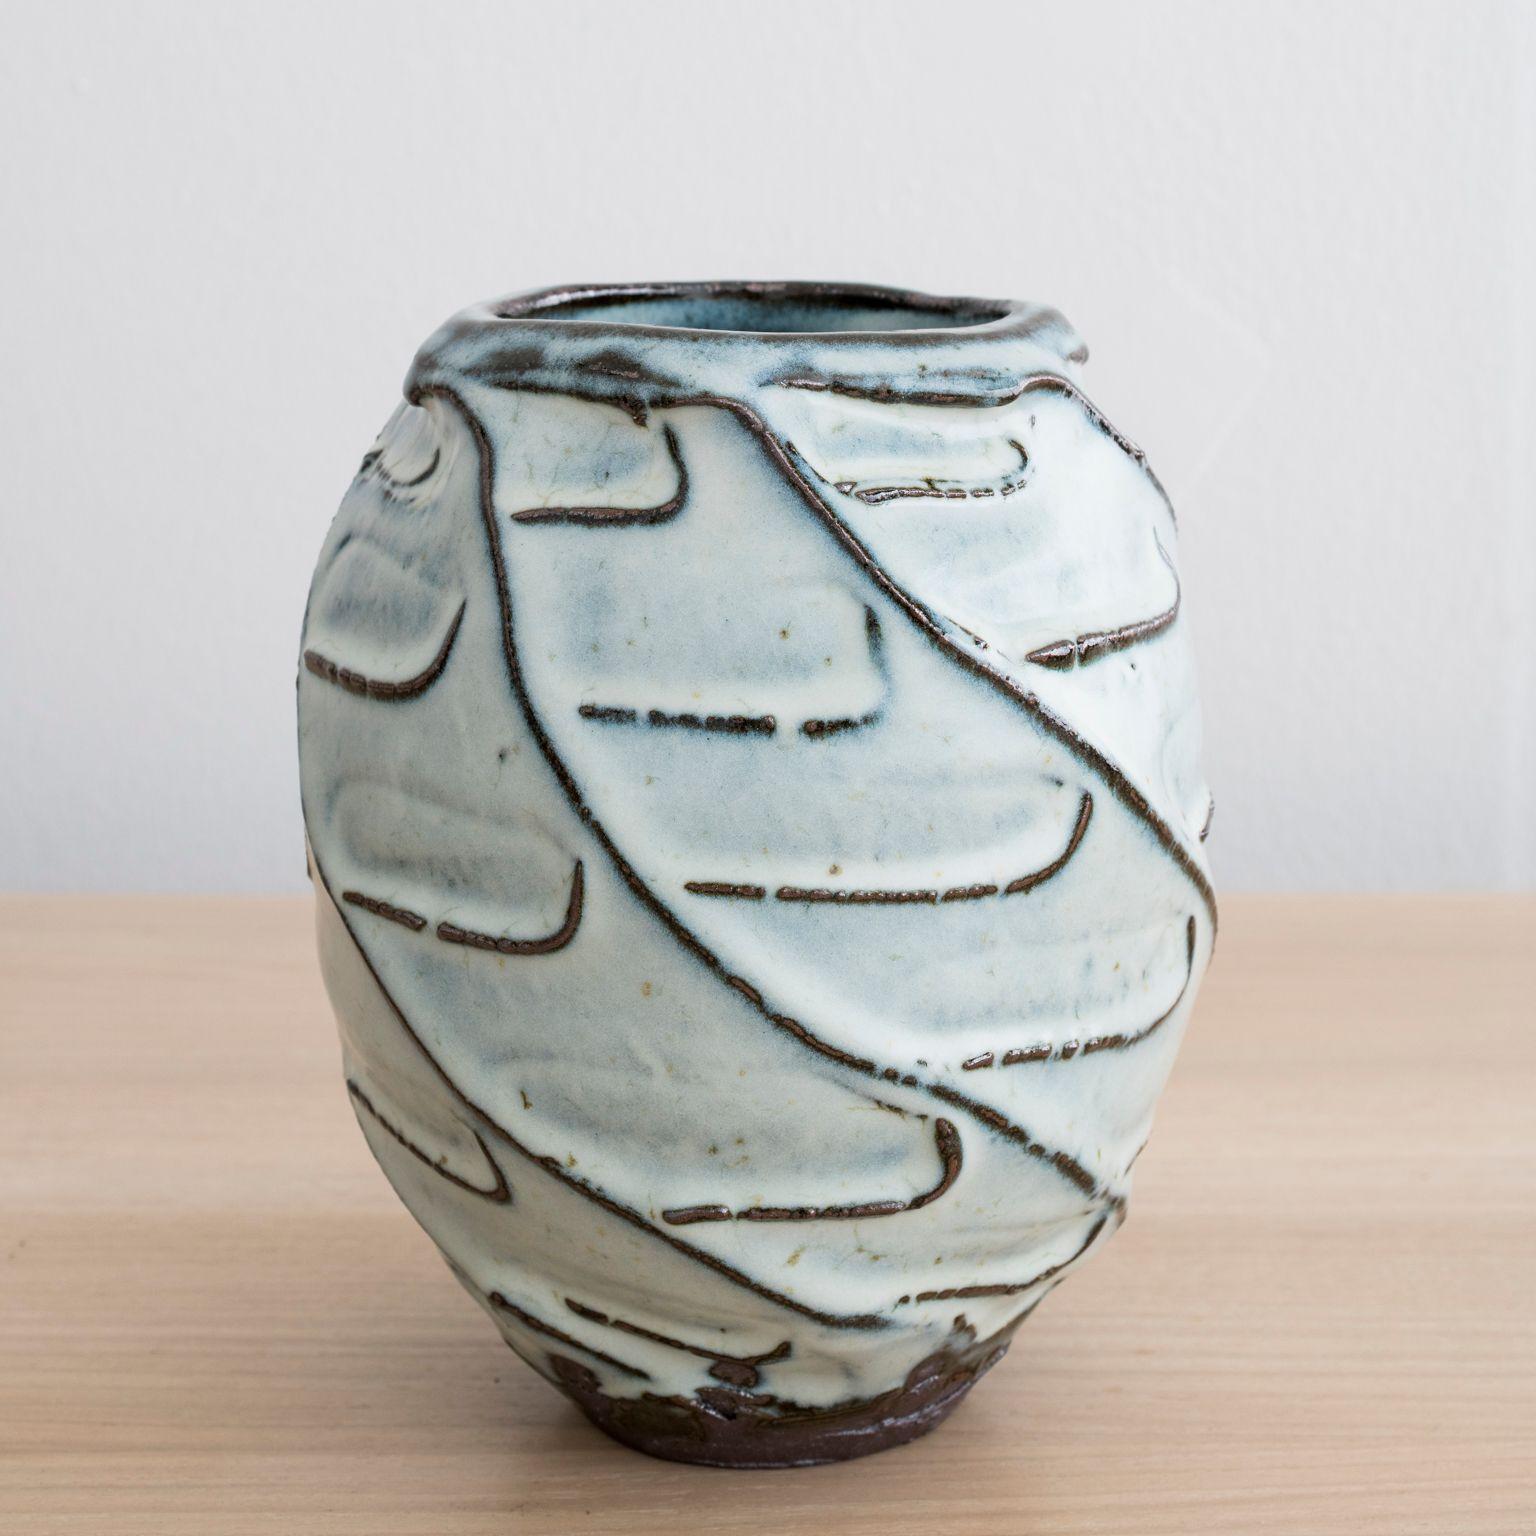 Vase en grès fait à la main par Mats Svensson

Argile noire avec glaçure Nuka

Fabriqué en Suède, 2020

Approximativement : Hauteur 8 1/2